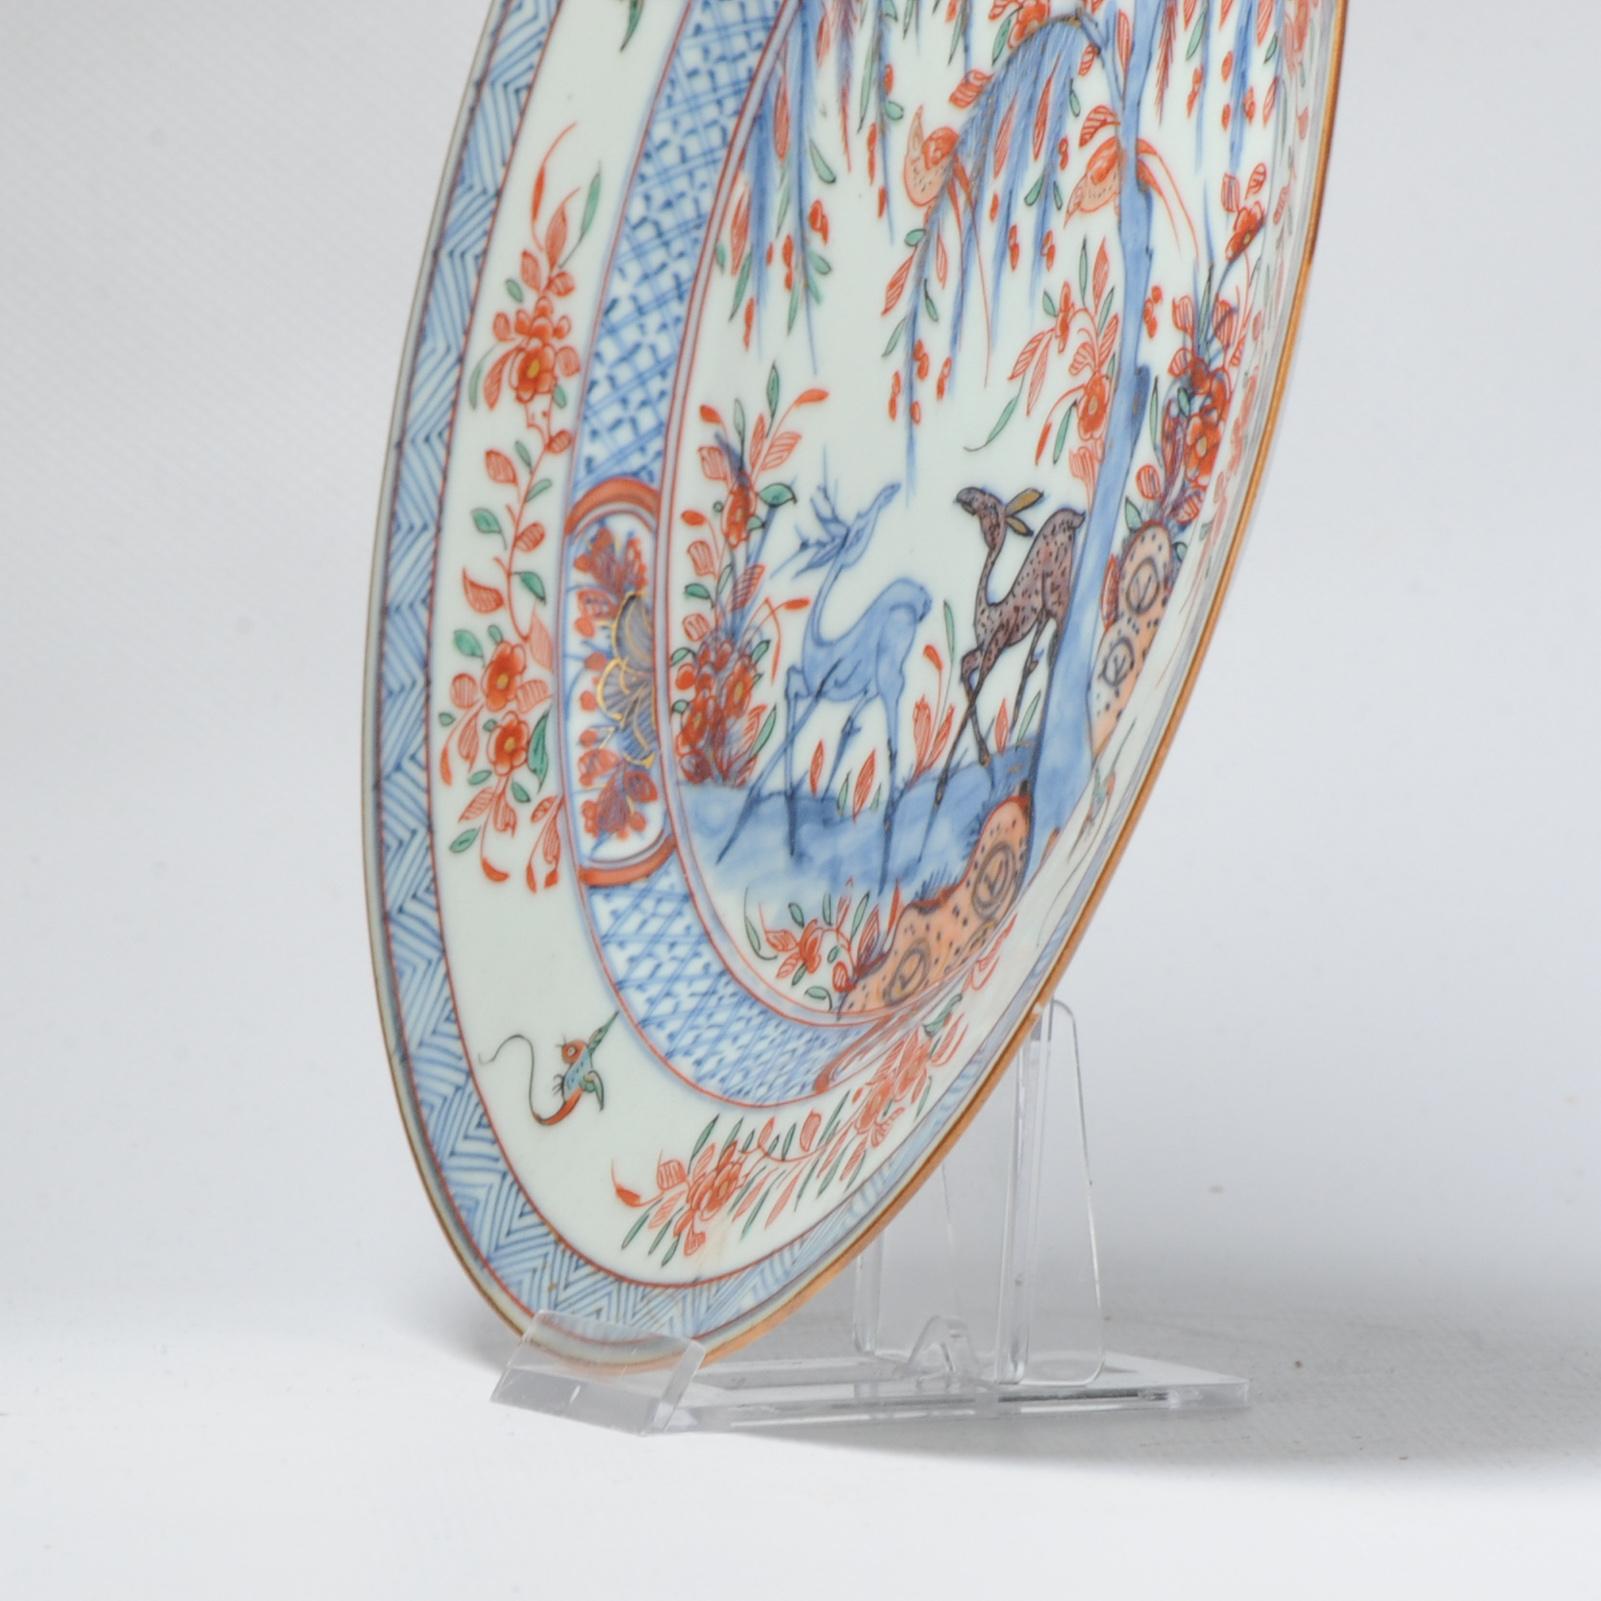 Très belle pièce de porcelaine Qianlong Amsterdam Bont du XVIIIe siècle, décorée de cerfs, d'oiseaux, de fleurs et d'arbres. Bleu sous glaçure et autres émaux sous glaçure. Les petits oiseaux de la bordure sont des motifs de Kakiemon.

Informations